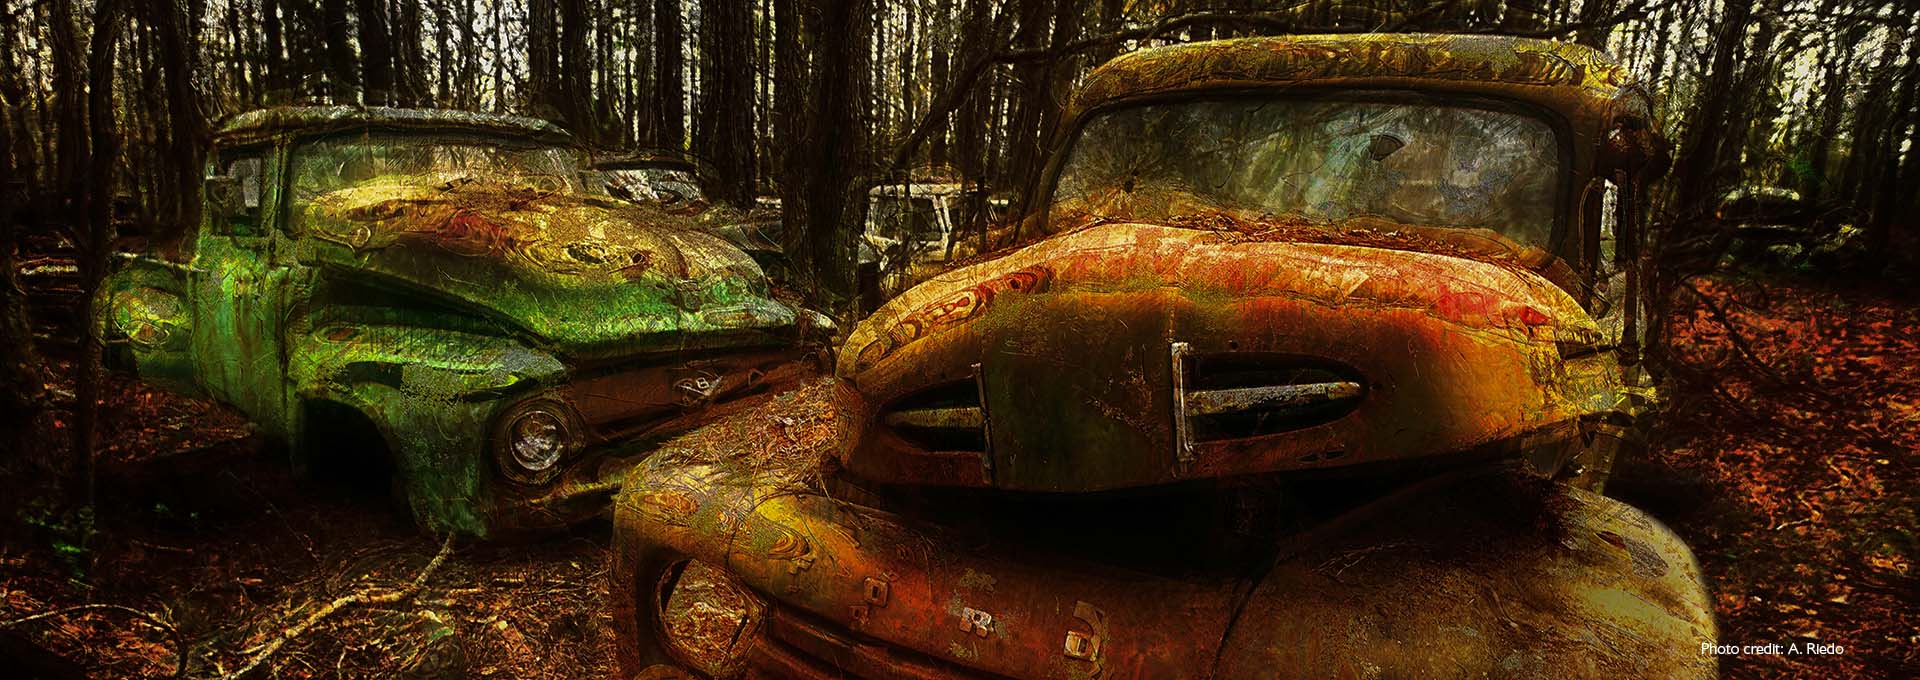 Billede af to gamle rustne grønne og brune biler på en bilkirkegård i skoven fotograferet af Bernafon Alpha høreapparatbruger